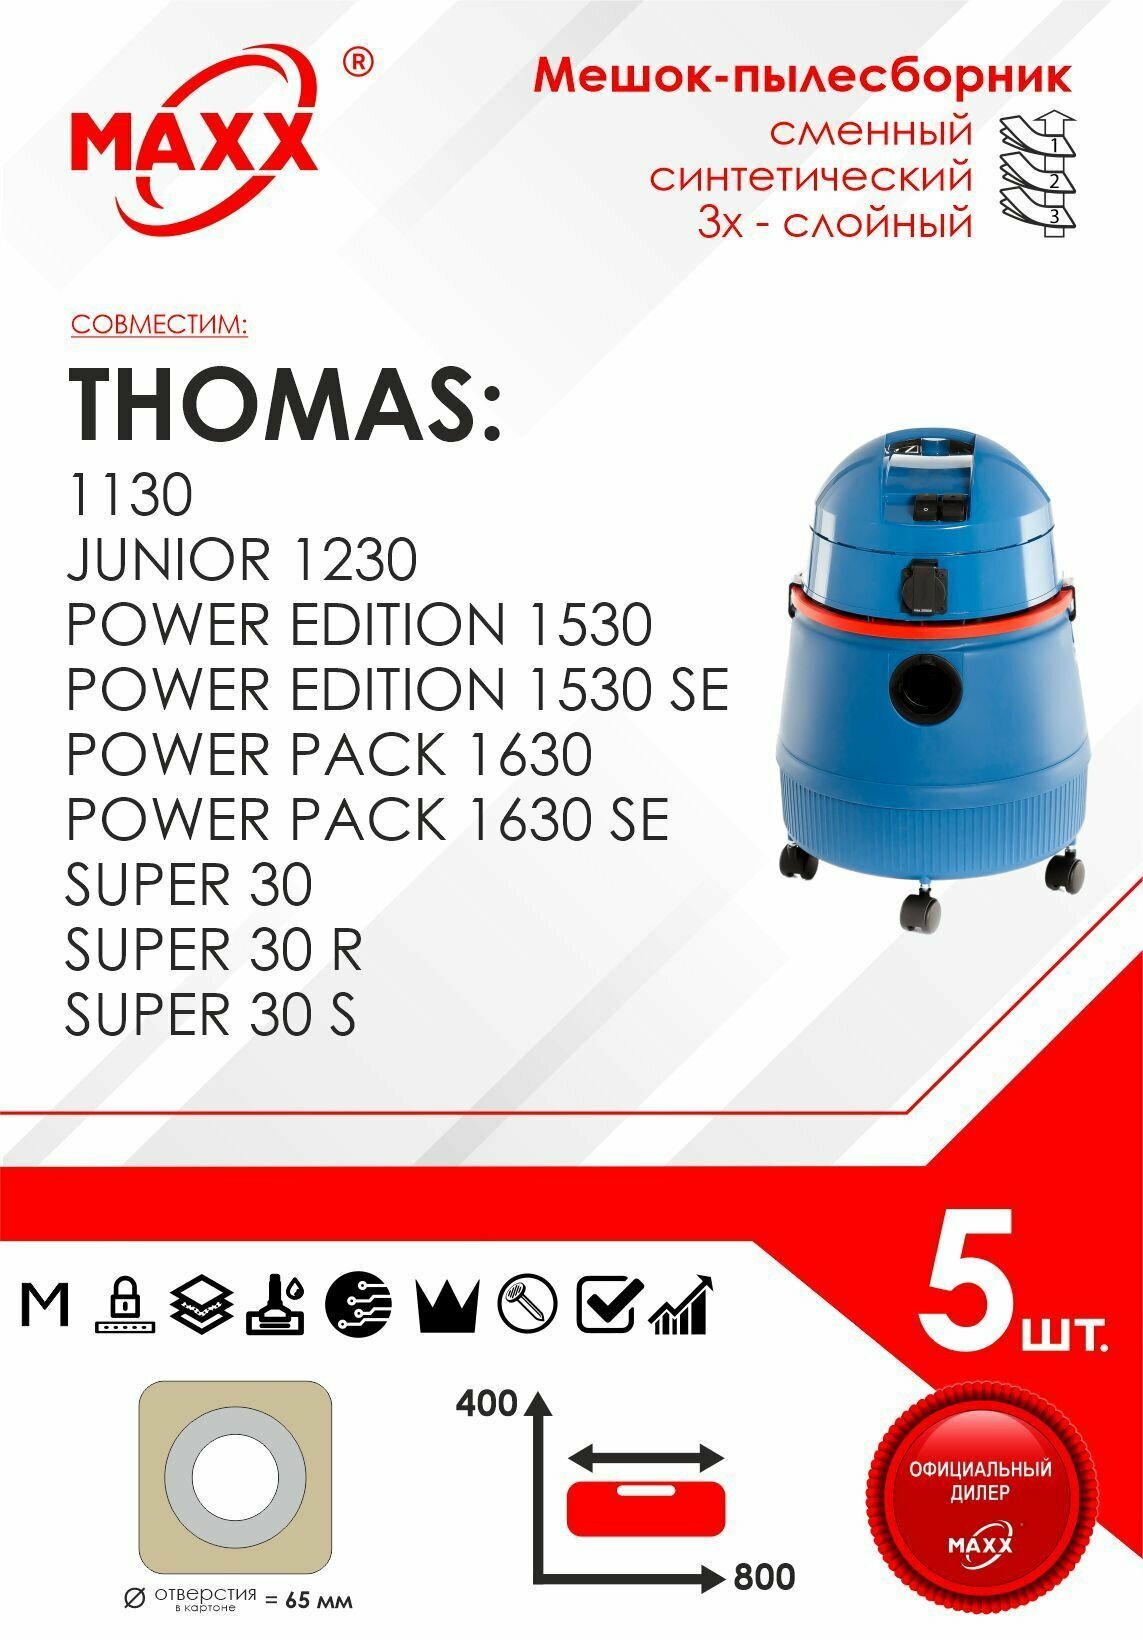 Мешок - пылесборник 5 шт. для пылесоса Thomas Power Edition 1530, Pack 1630, Super 30